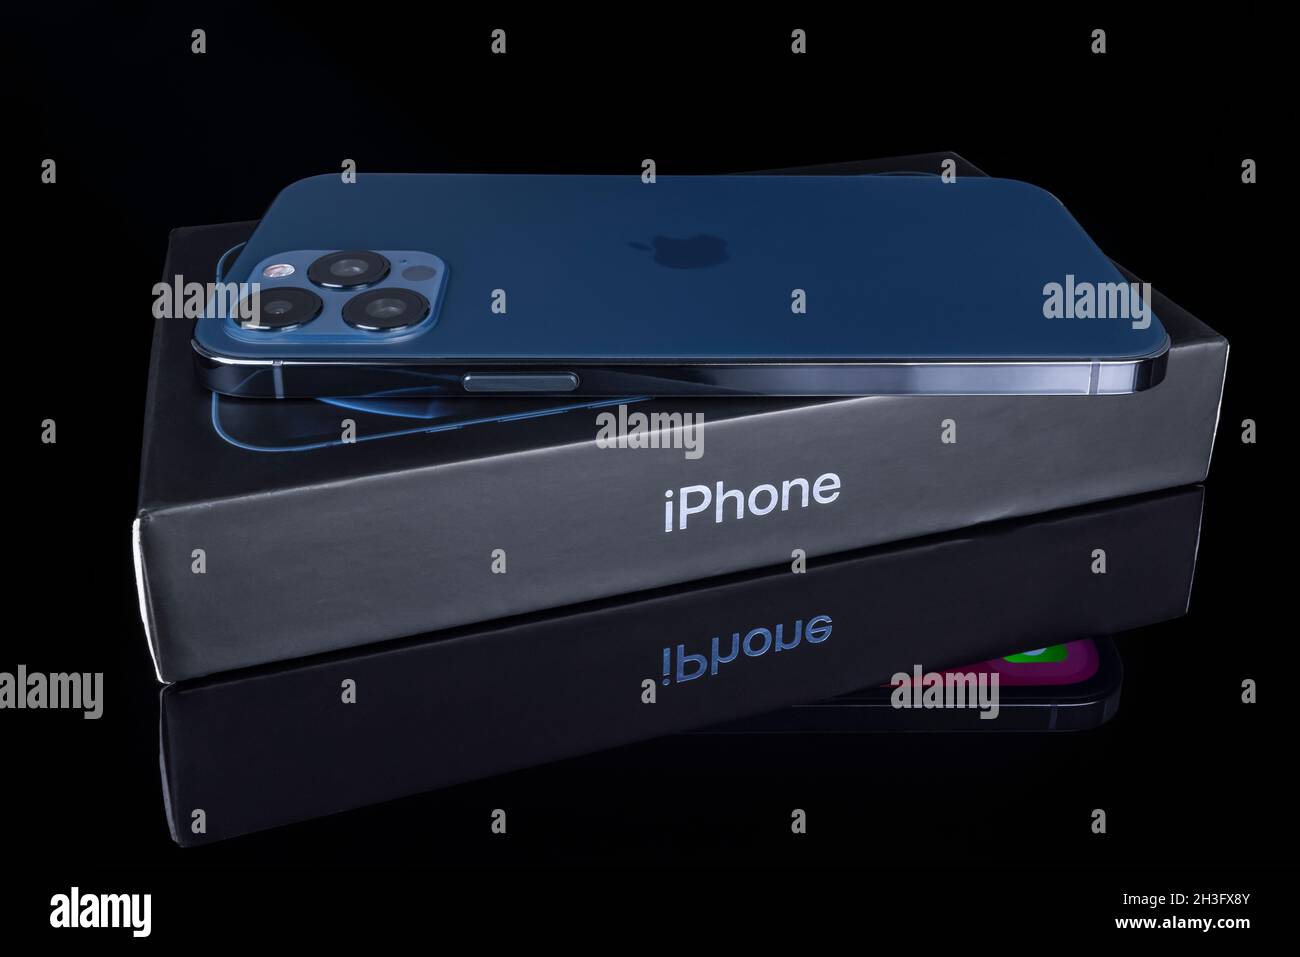 Galati, Rumania - 14 de octubre de 2021: Estudio de lanzamiento del nuevo Apple iPhone 12 Pro Max color azul, vista posterior con el logotipo de Apple. Aísle el fondo de vidrio negro Foto de stock